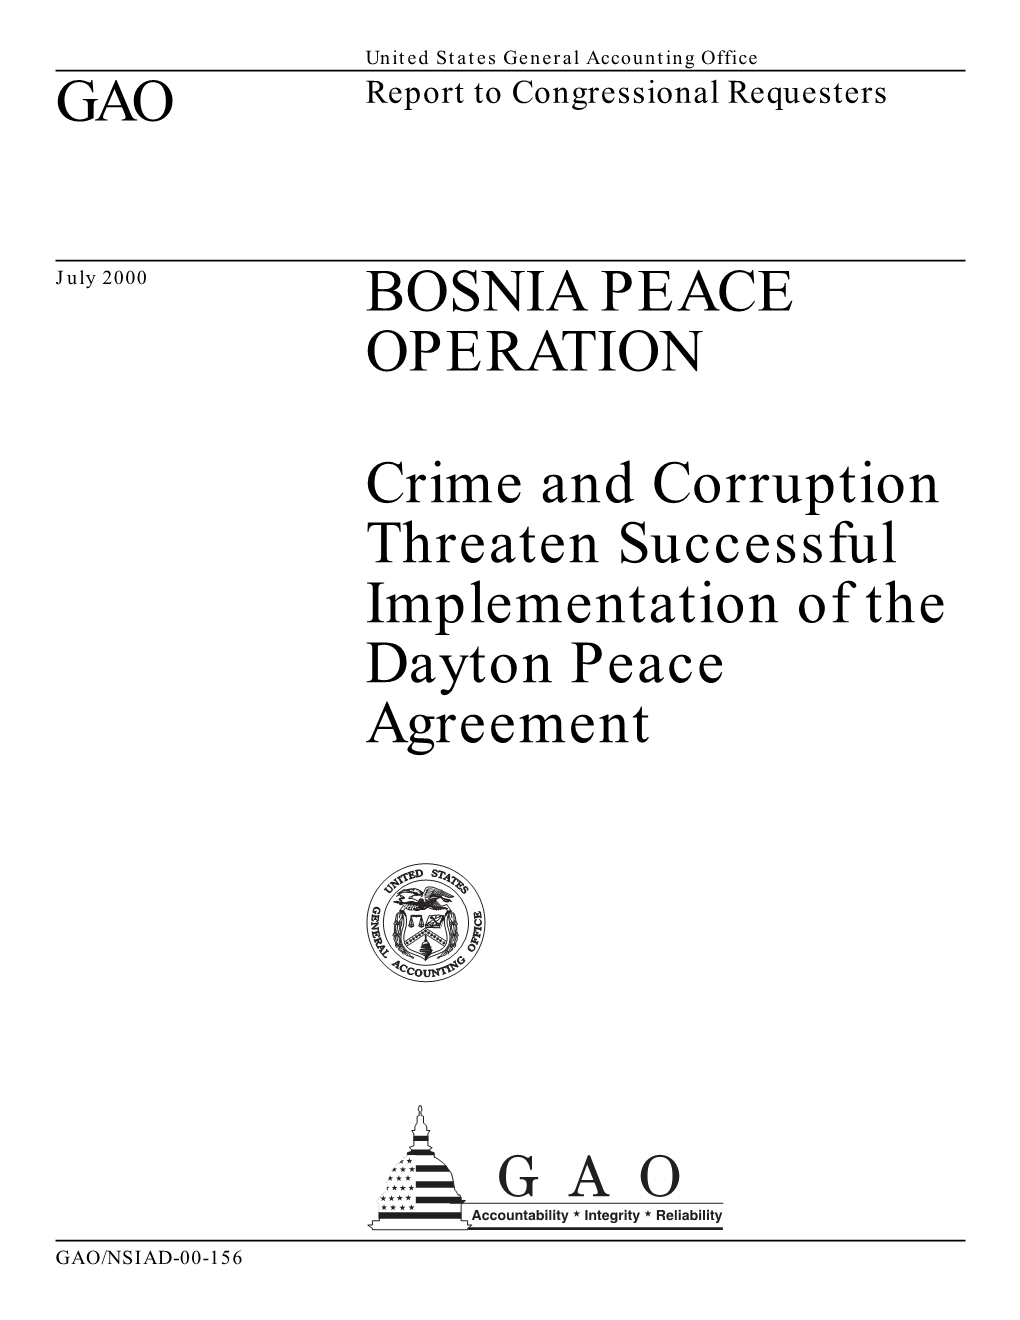 GAO BOSNIA PEACE OPERATION Crime and Corruption Threaten